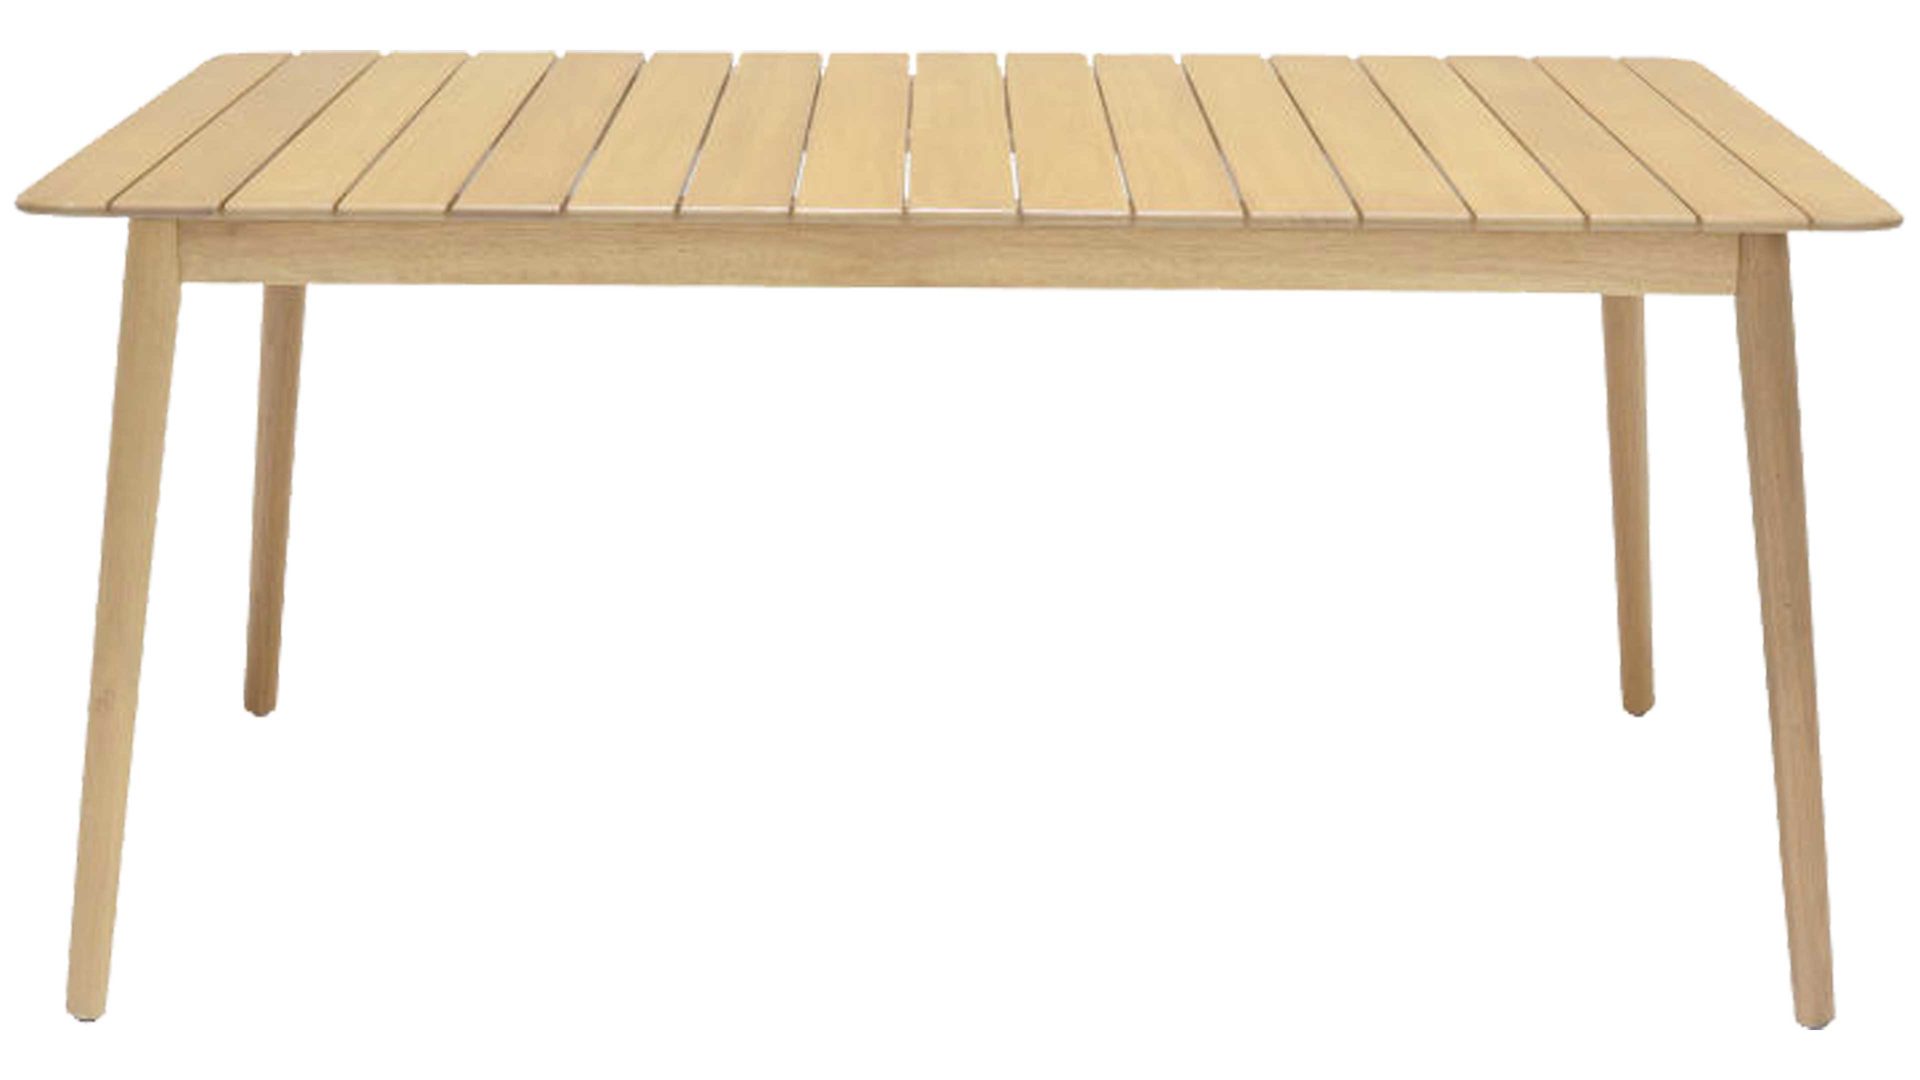 Gartentisch Scancom aus Holz in Holzfarben LifestyleGarden® Gartenmöbel-Serie Nassau - Esstisch teakfarbenes  Eukalyptusholz - ca. 160 x 90 cm